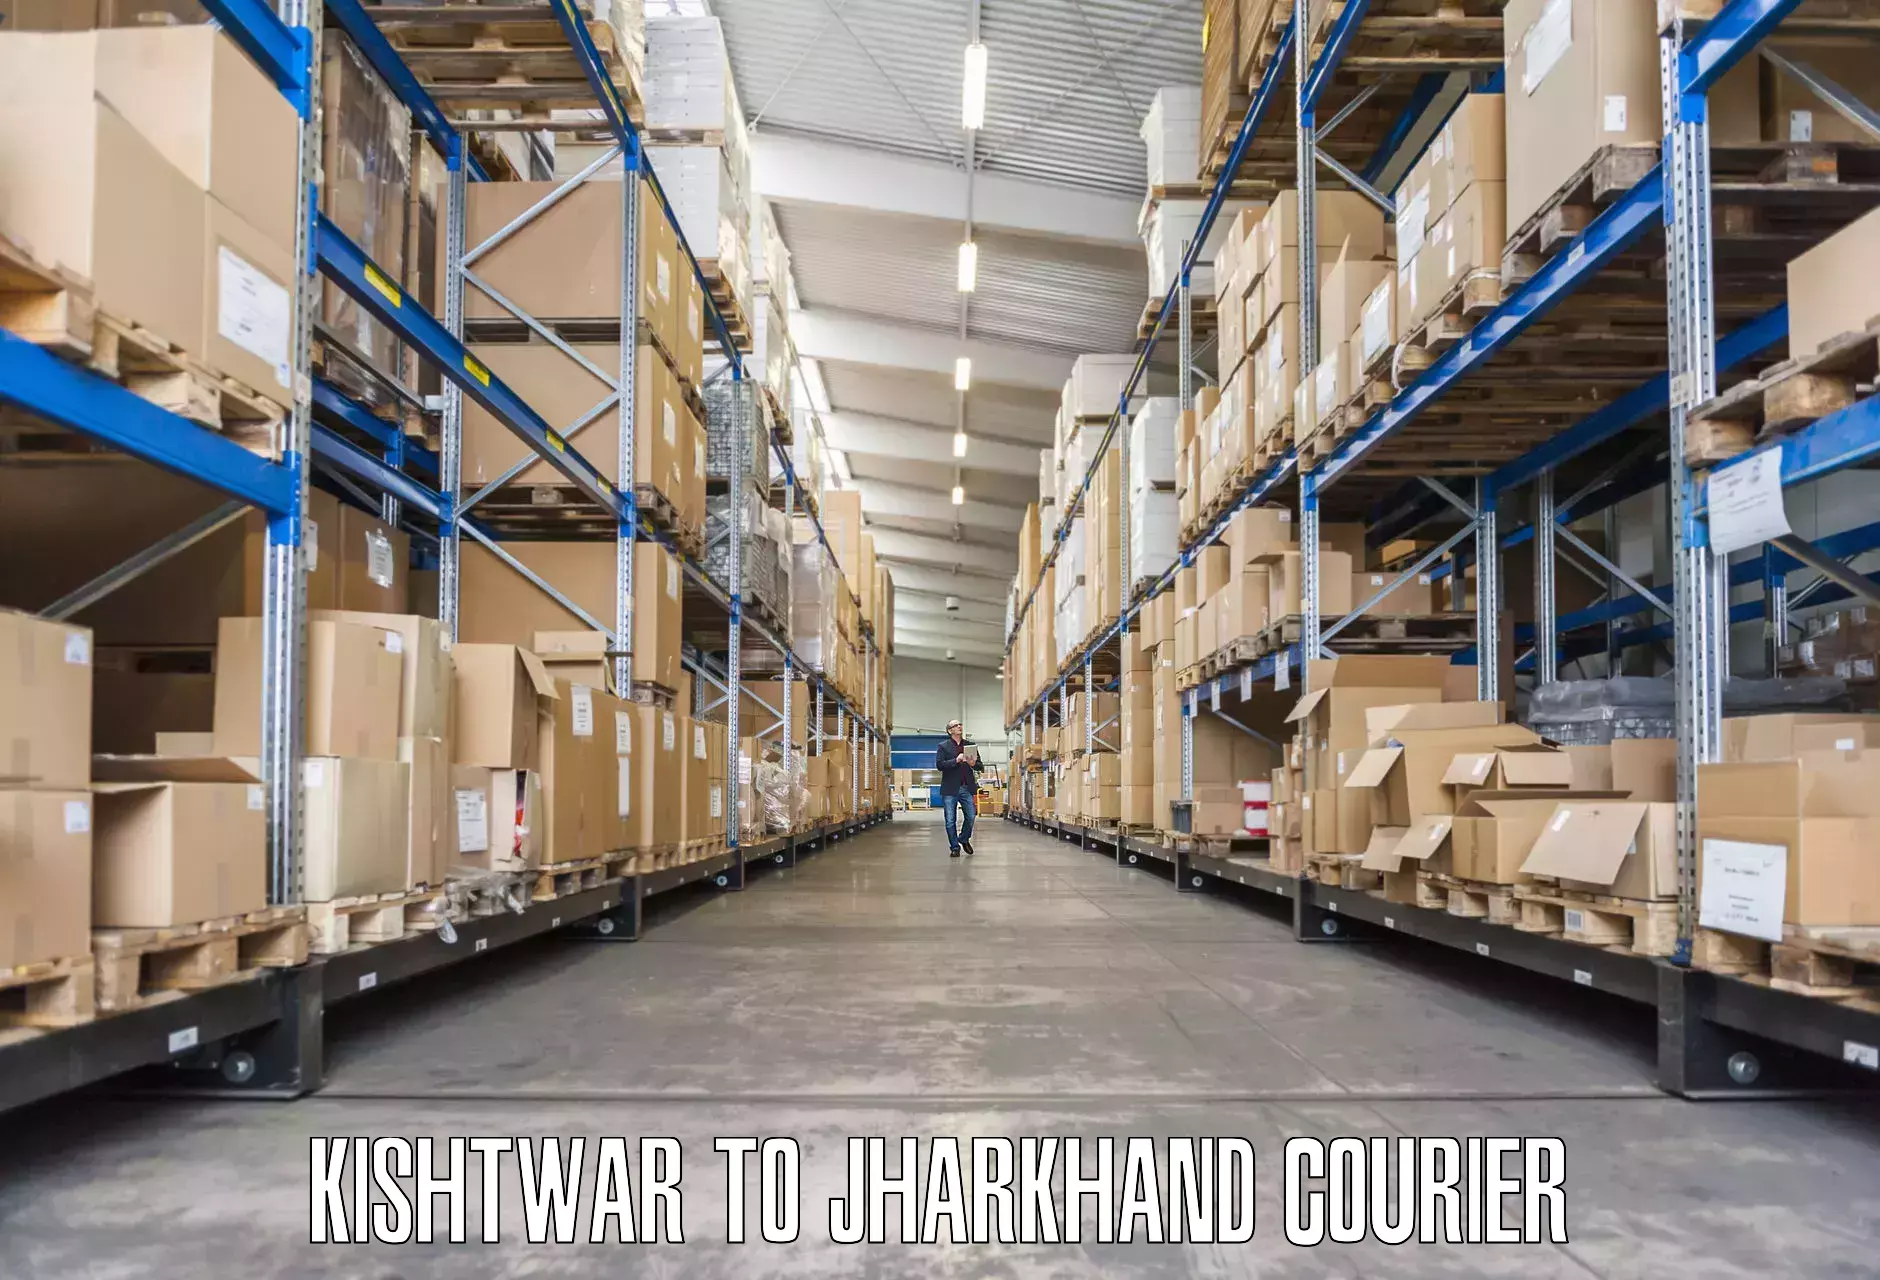 Household goods transport service Kishtwar to Jharkhand